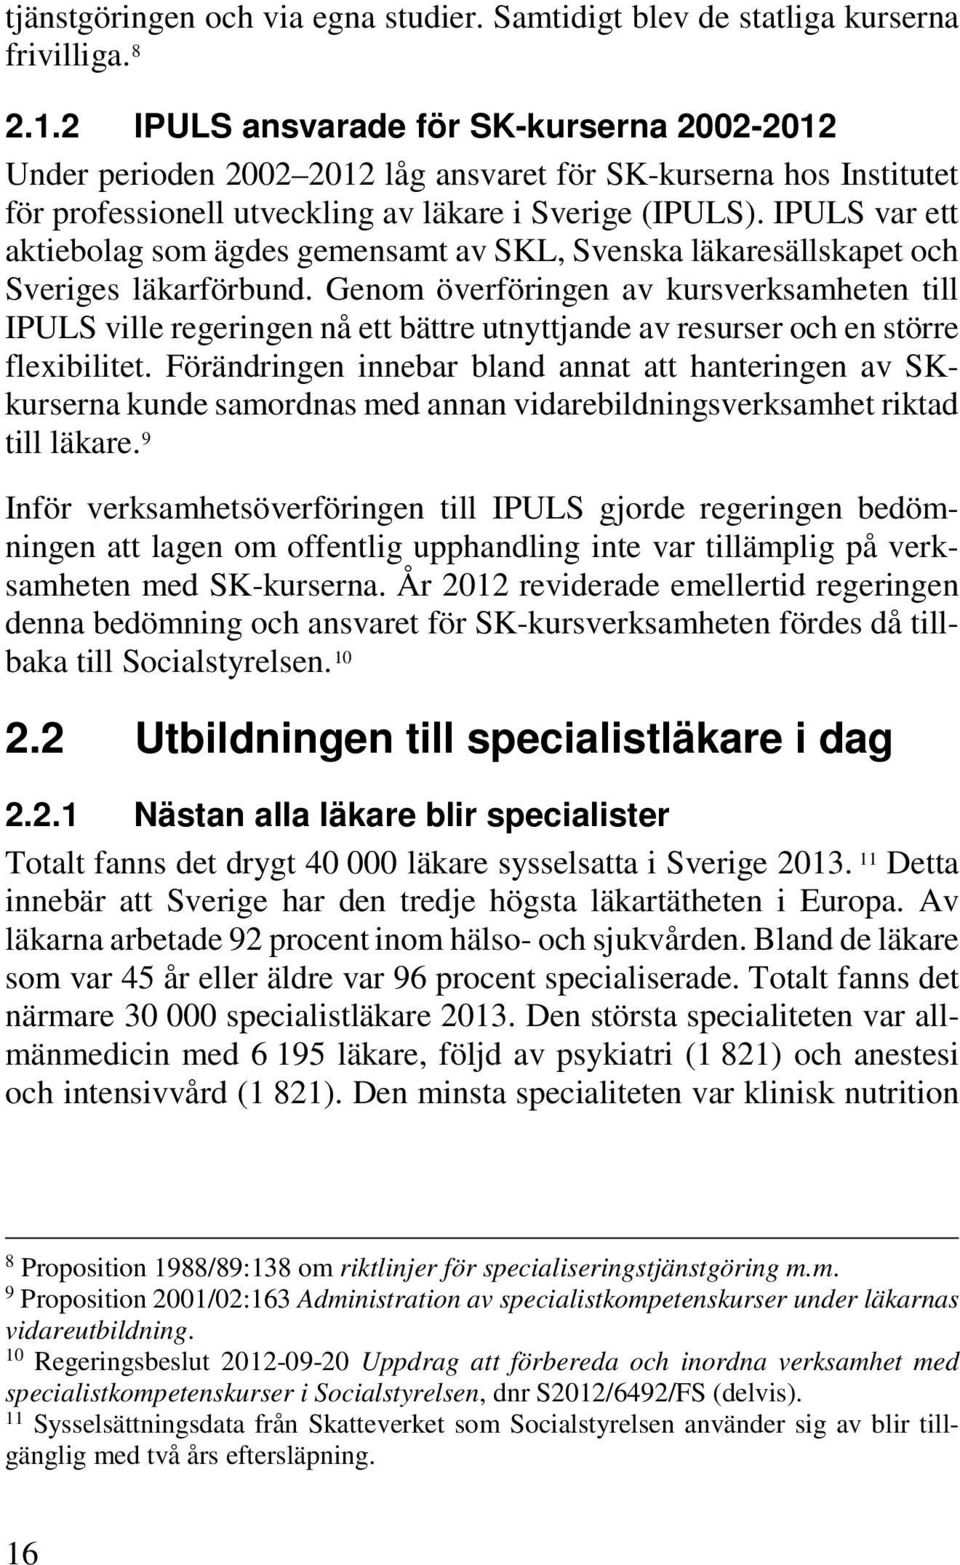 IPULS var ett aktiebolag som ägdes gemensamt av SKL, Svenska läkaresällskapet och Sveriges läkarförbund.